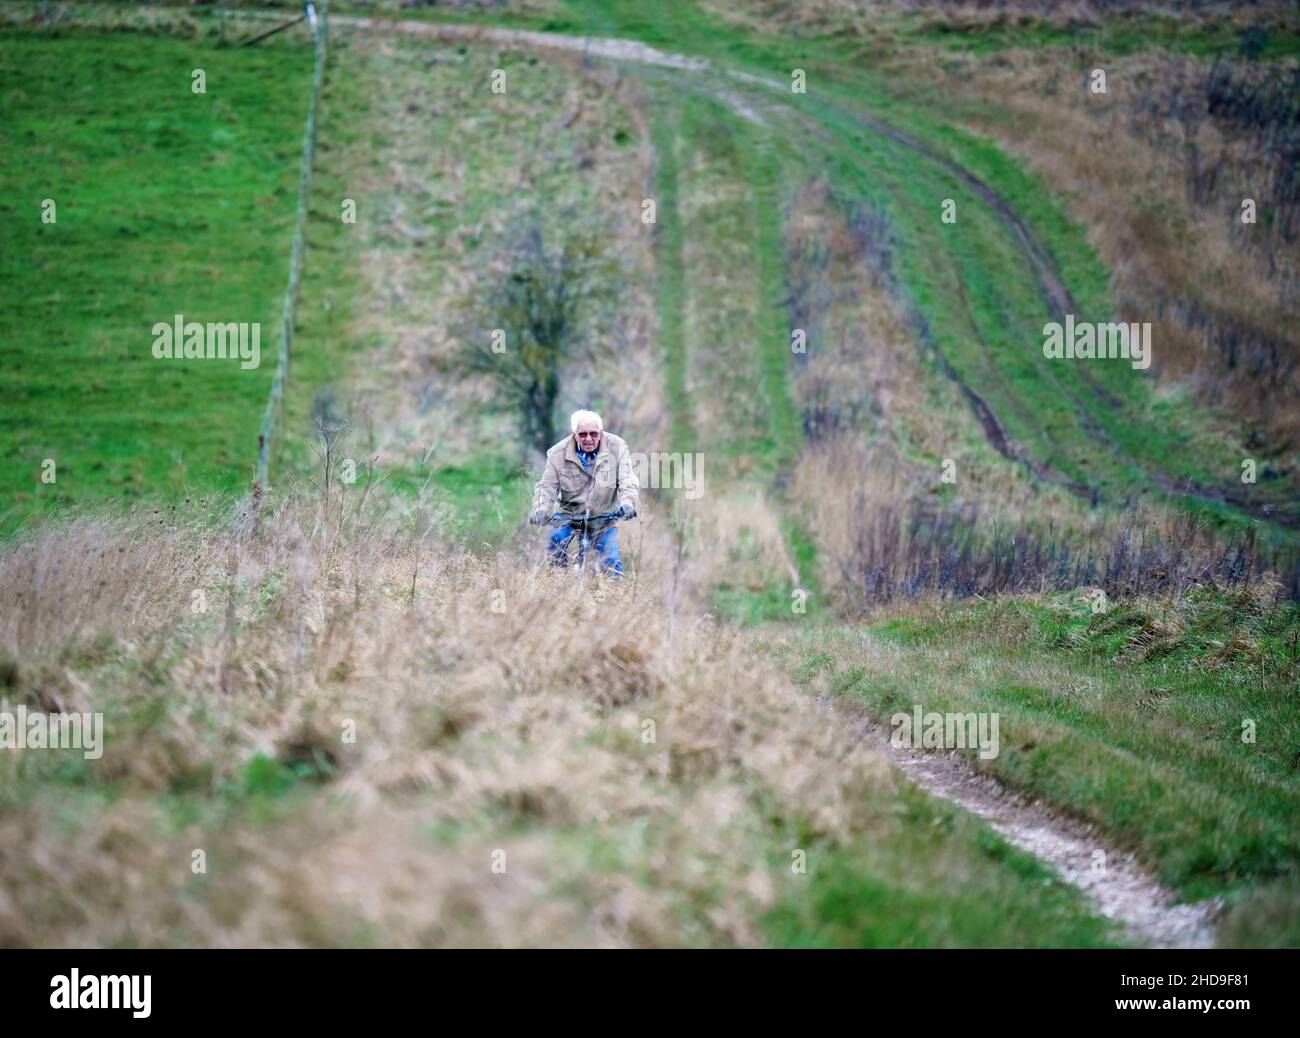 Un ciclista casual peddle bike che corre lungo una pista non fatta che attraversa la campagna aperta, salisbury Plain, Wiltshire UK Foto Stock